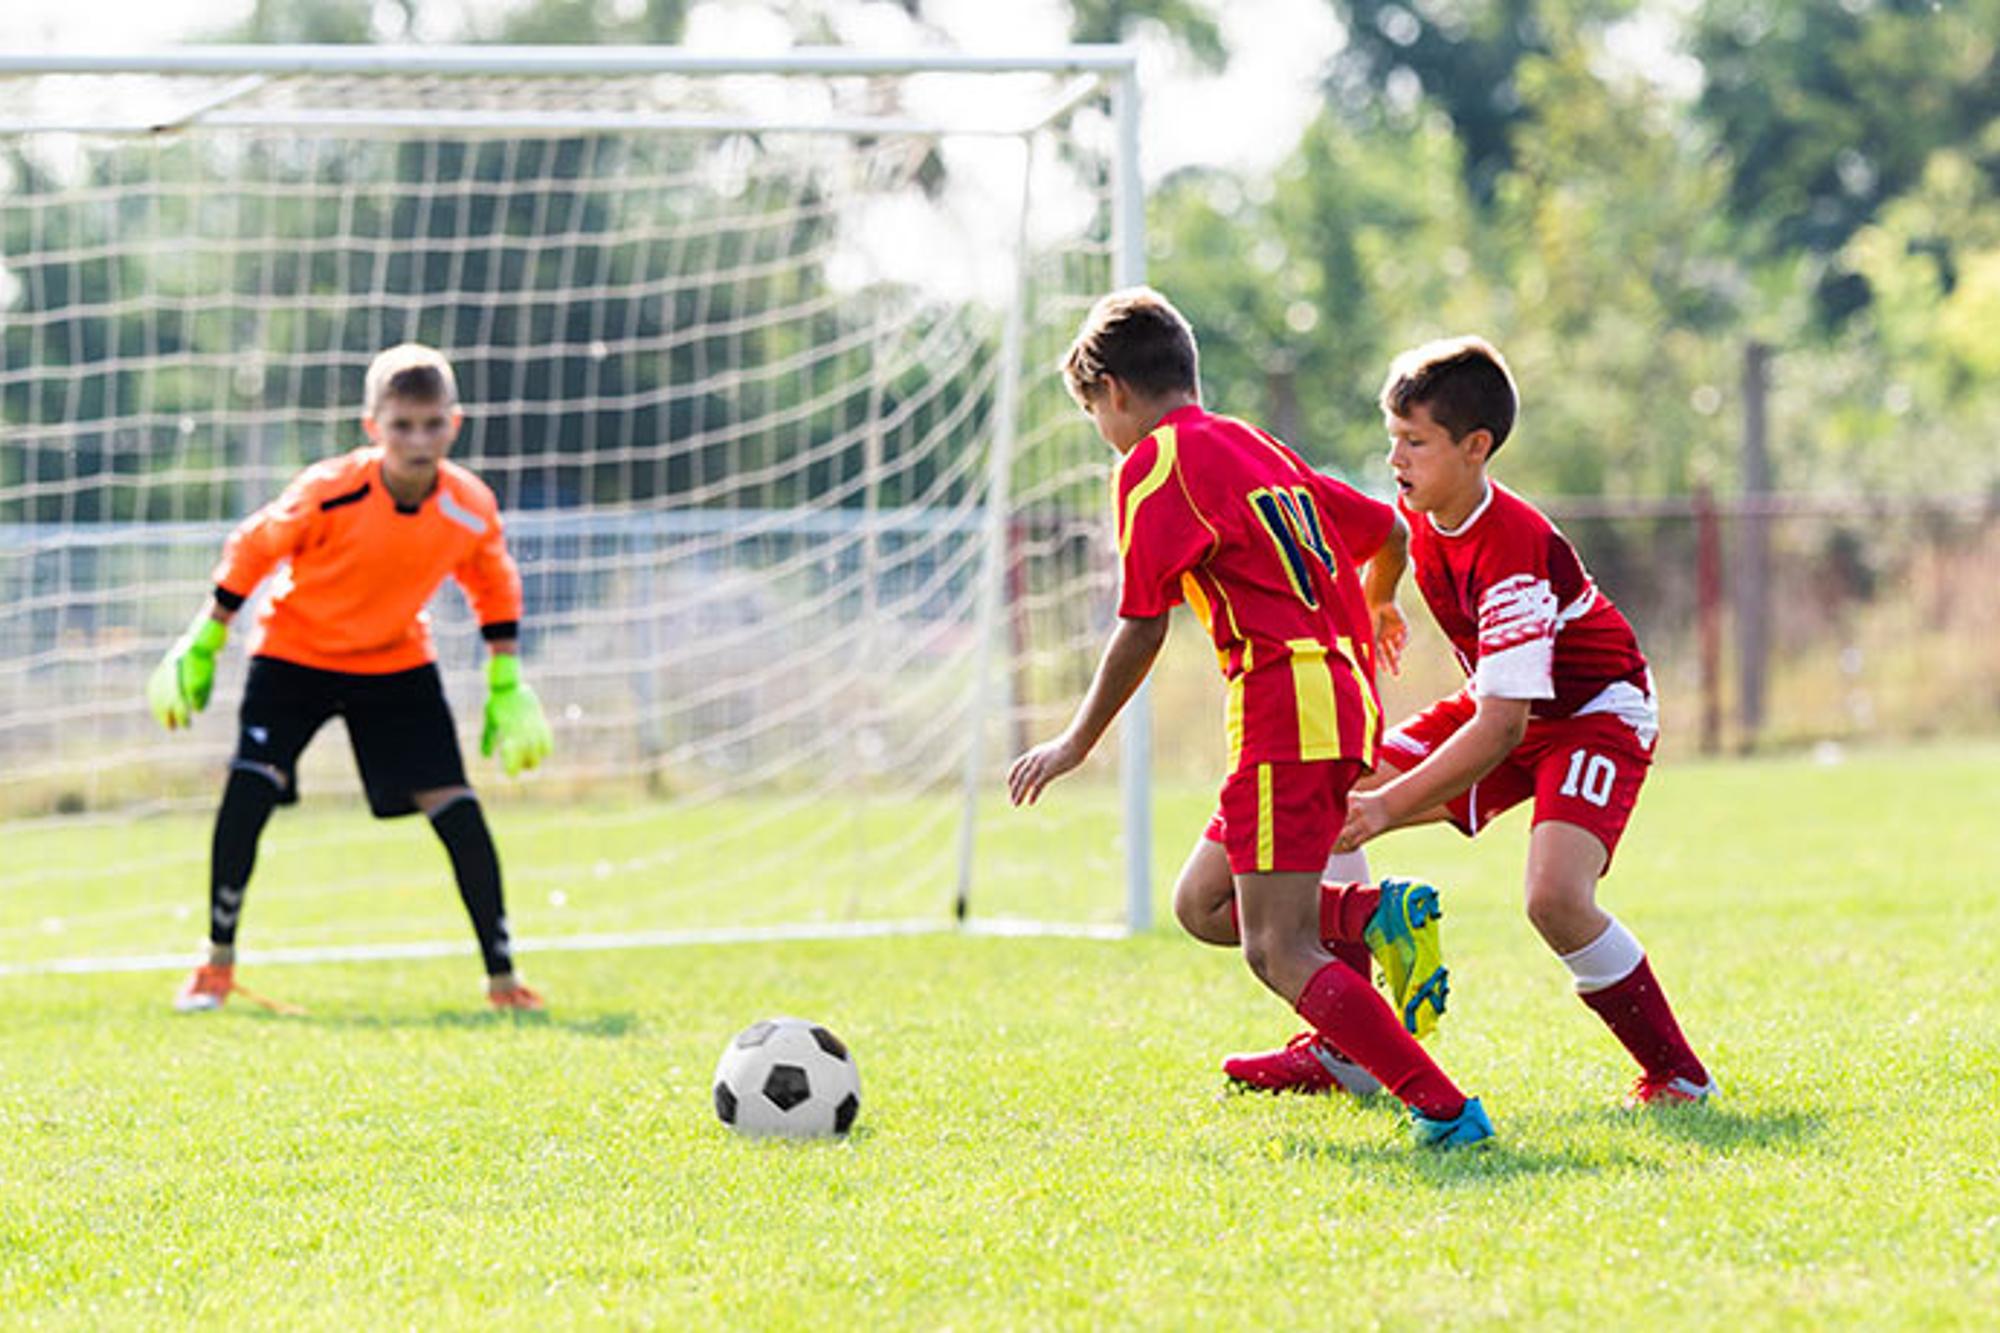 Tre pojkar som spelar fotboll på en fotbolls plan. Två av pojkarna jagar bollen och den tredje står i mål.